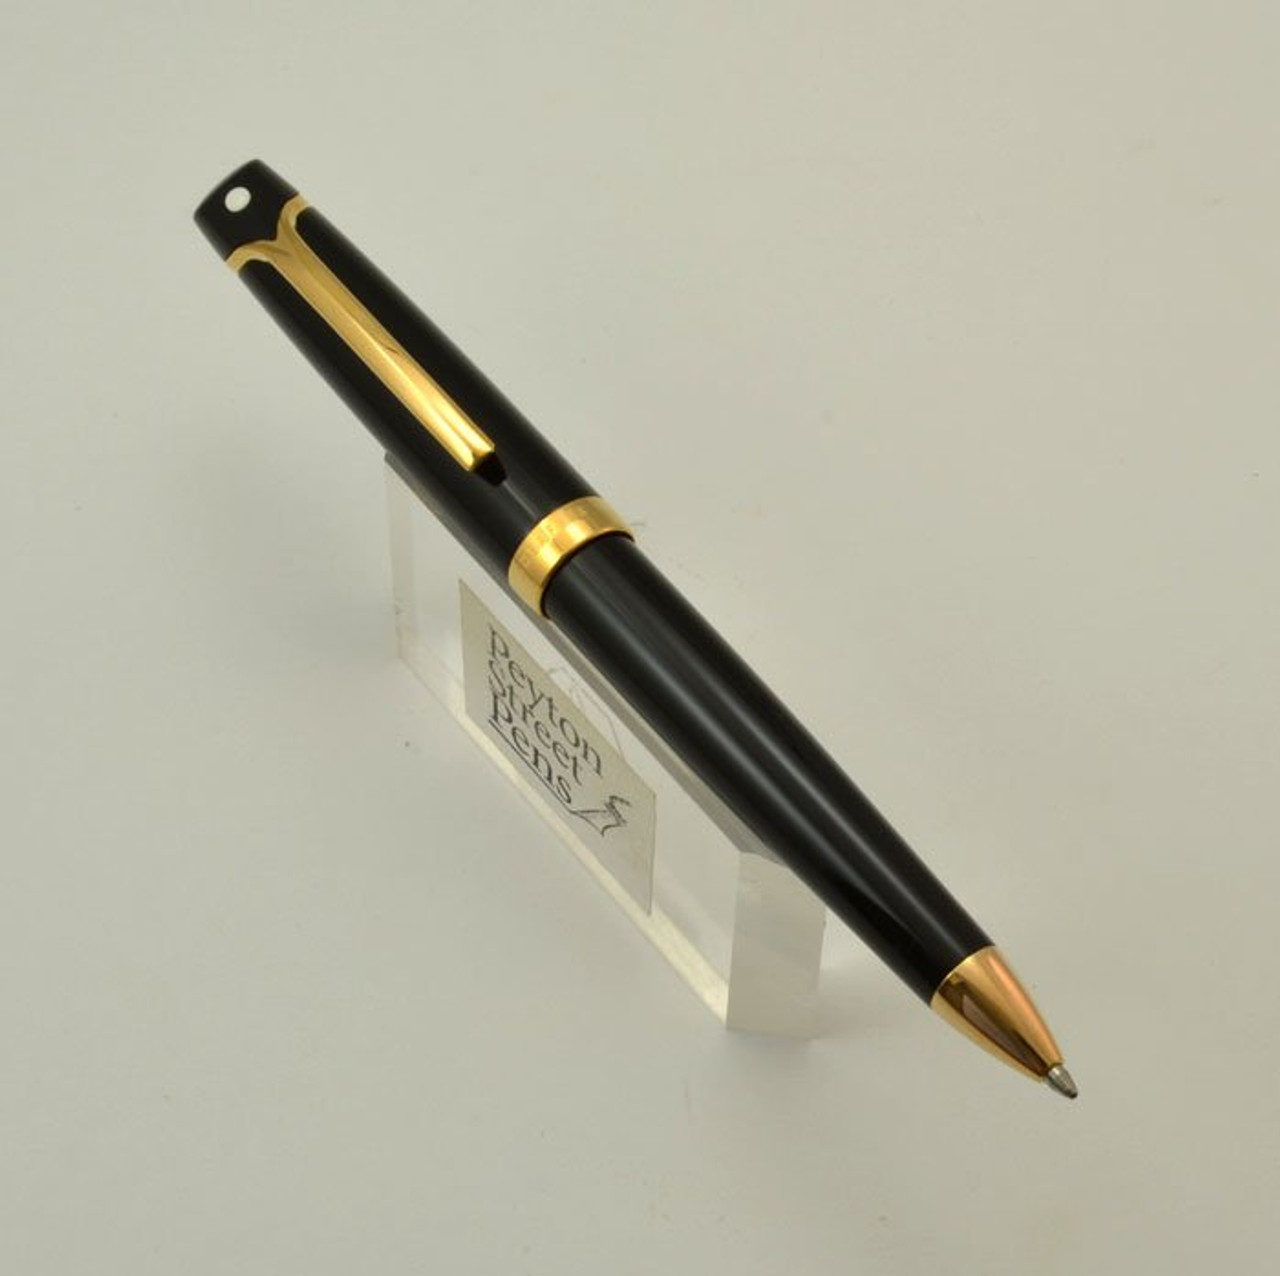 Sheaffer Valor Ballpoint Pen - Italian-Made, Black w Gold Trim (New Old Stock)